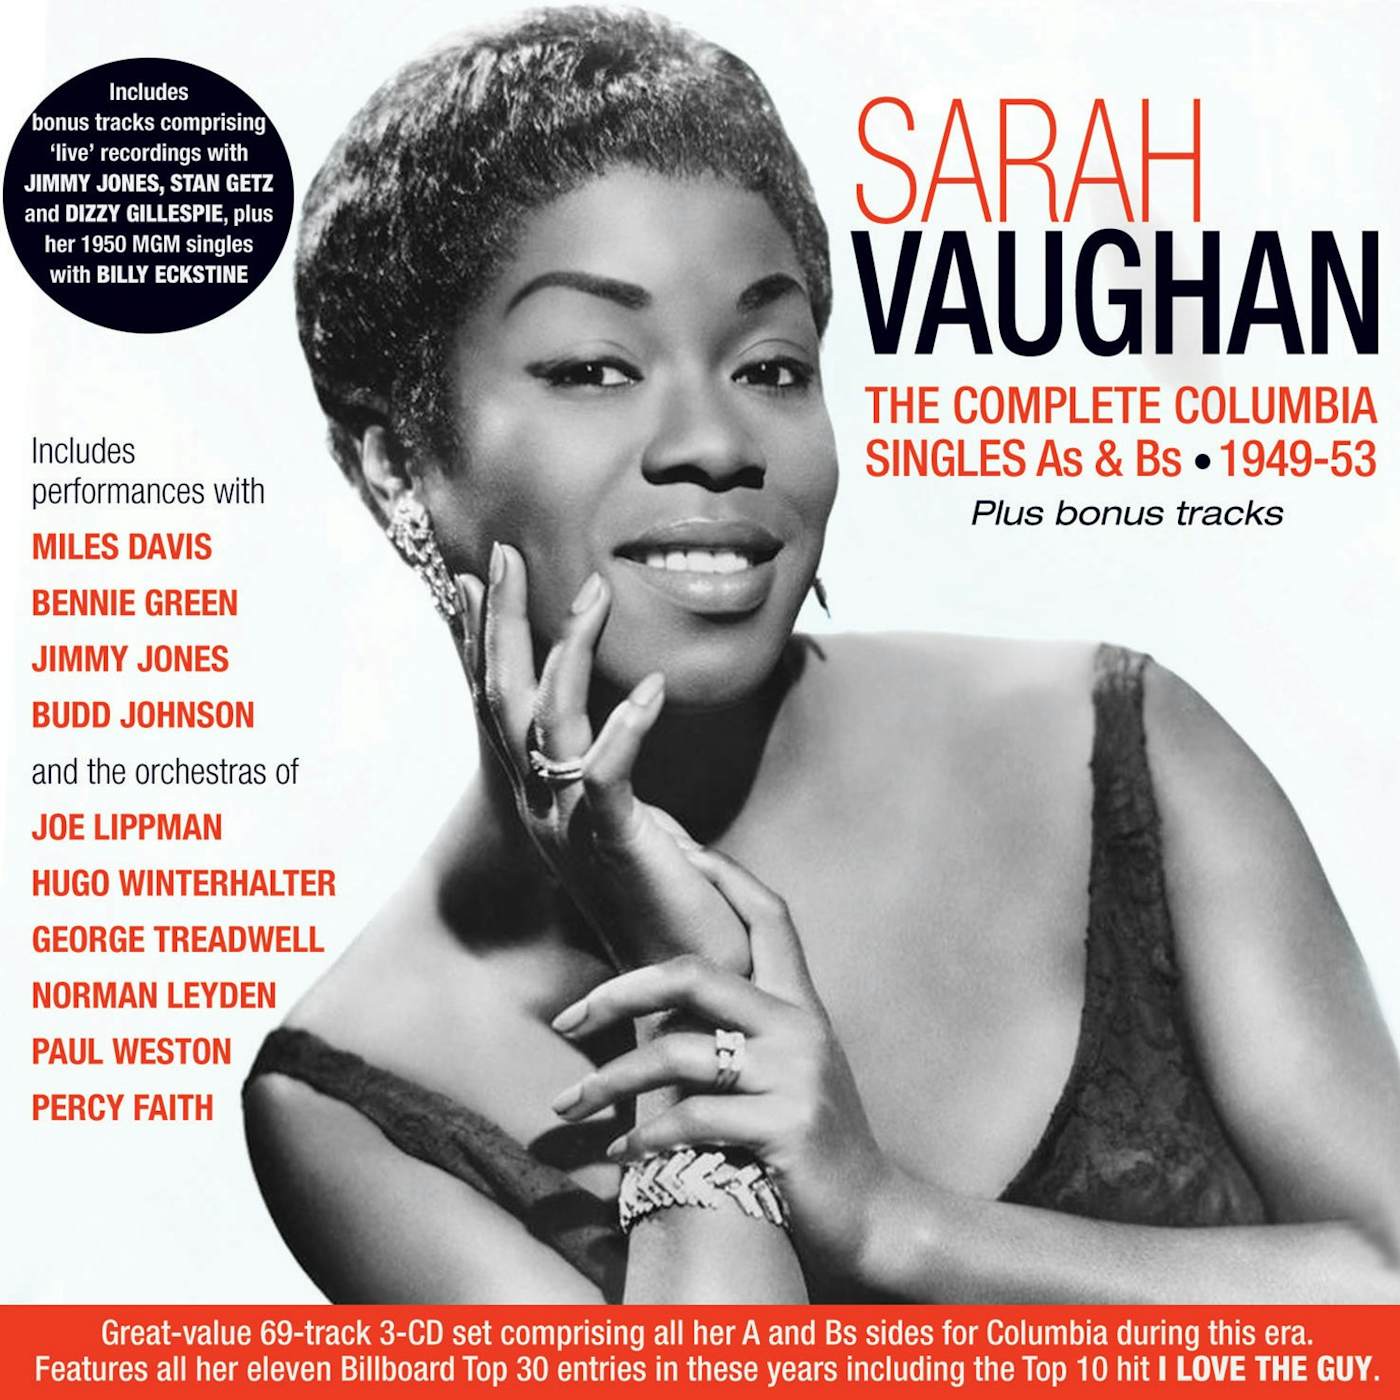 Sarah Vaughan COMPLETE COLUMBIA SINGLES AS & BS 1949-53 CD